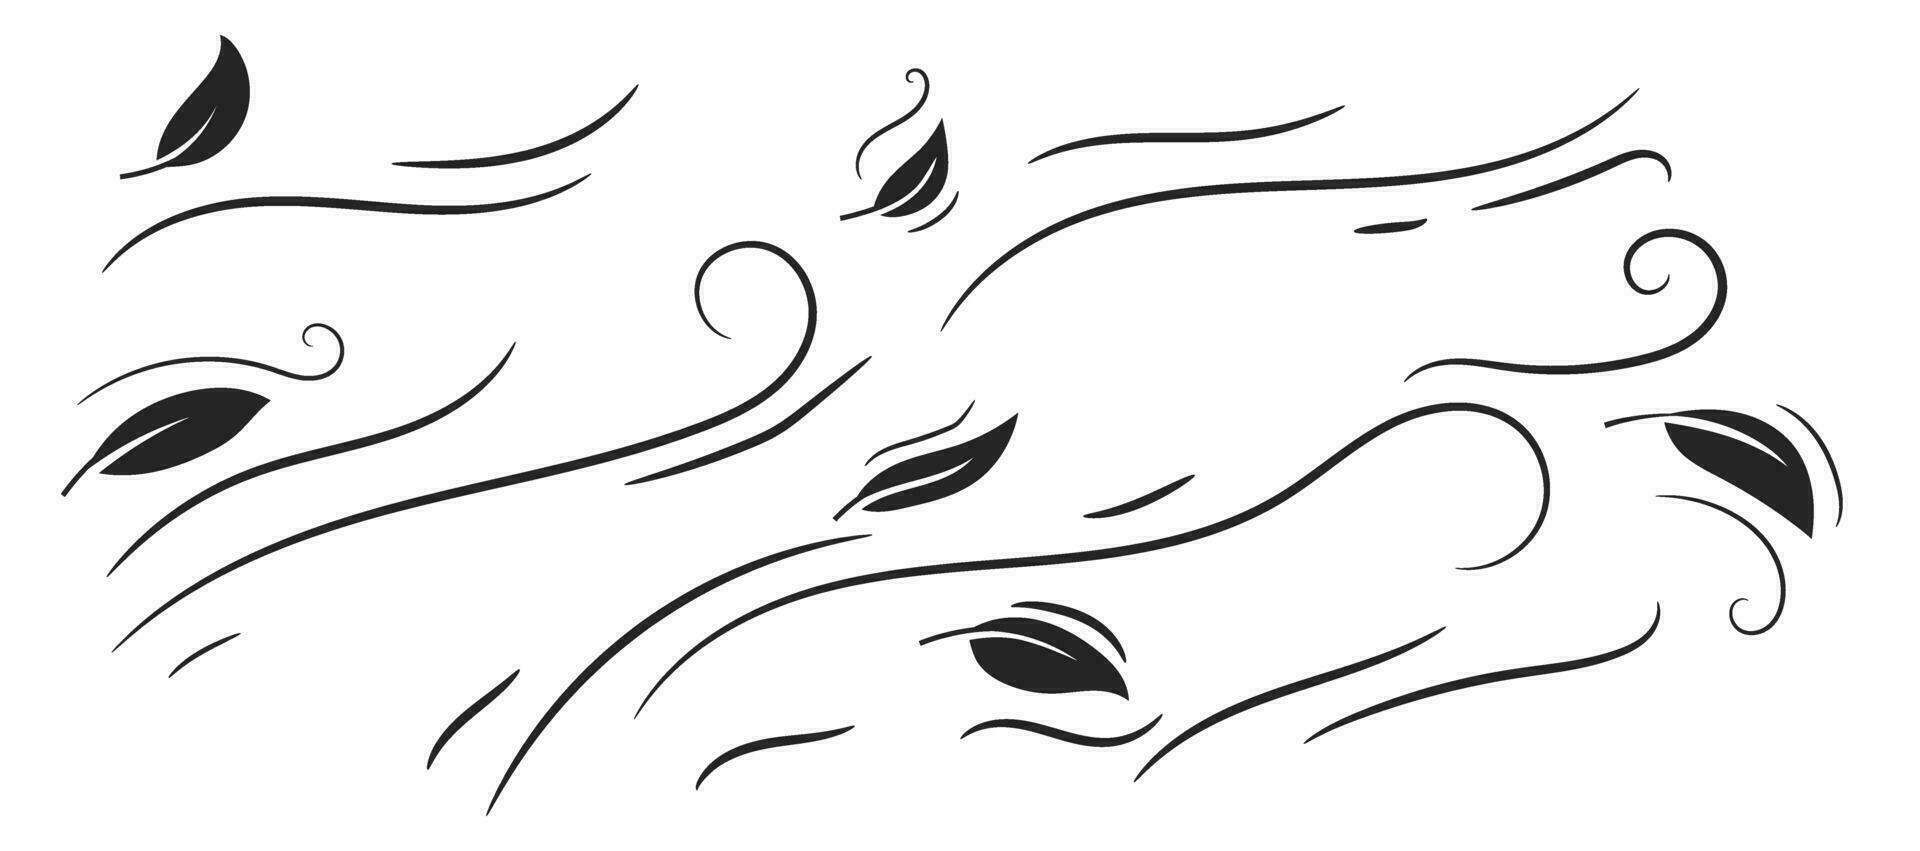 Blatt geblasen durch das Wind Gekritzel Hand Zeichnung vektor